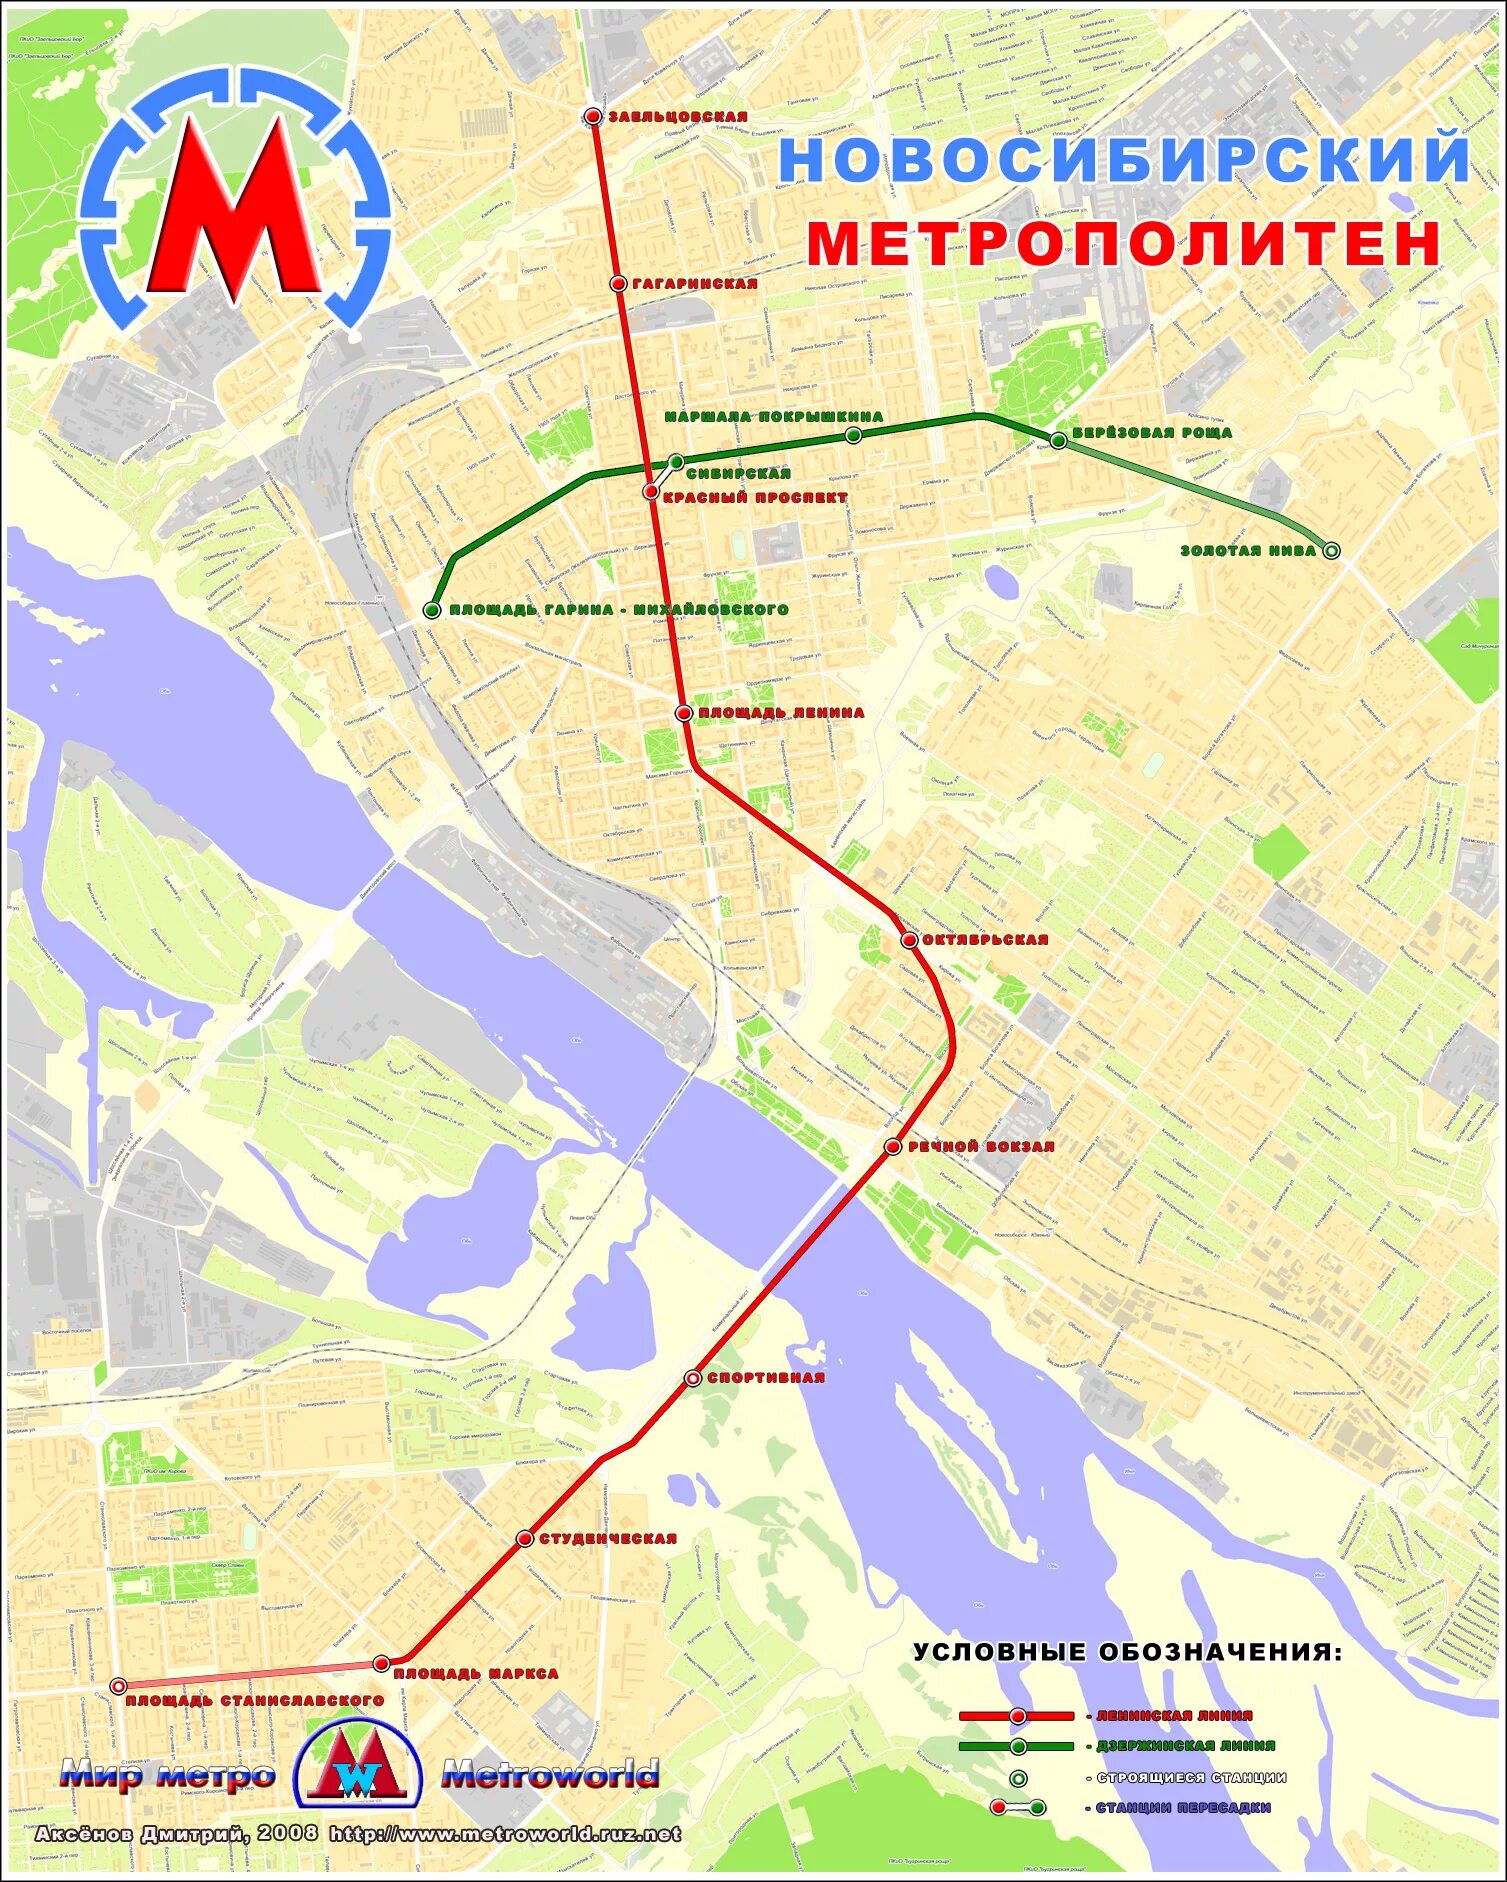 Метрополитен Новосибирск схема 2020. Карта метрополитена Новосибирска 2021. Схема метро Новосибирска 2022. Карта метро Новосибирск 2021.